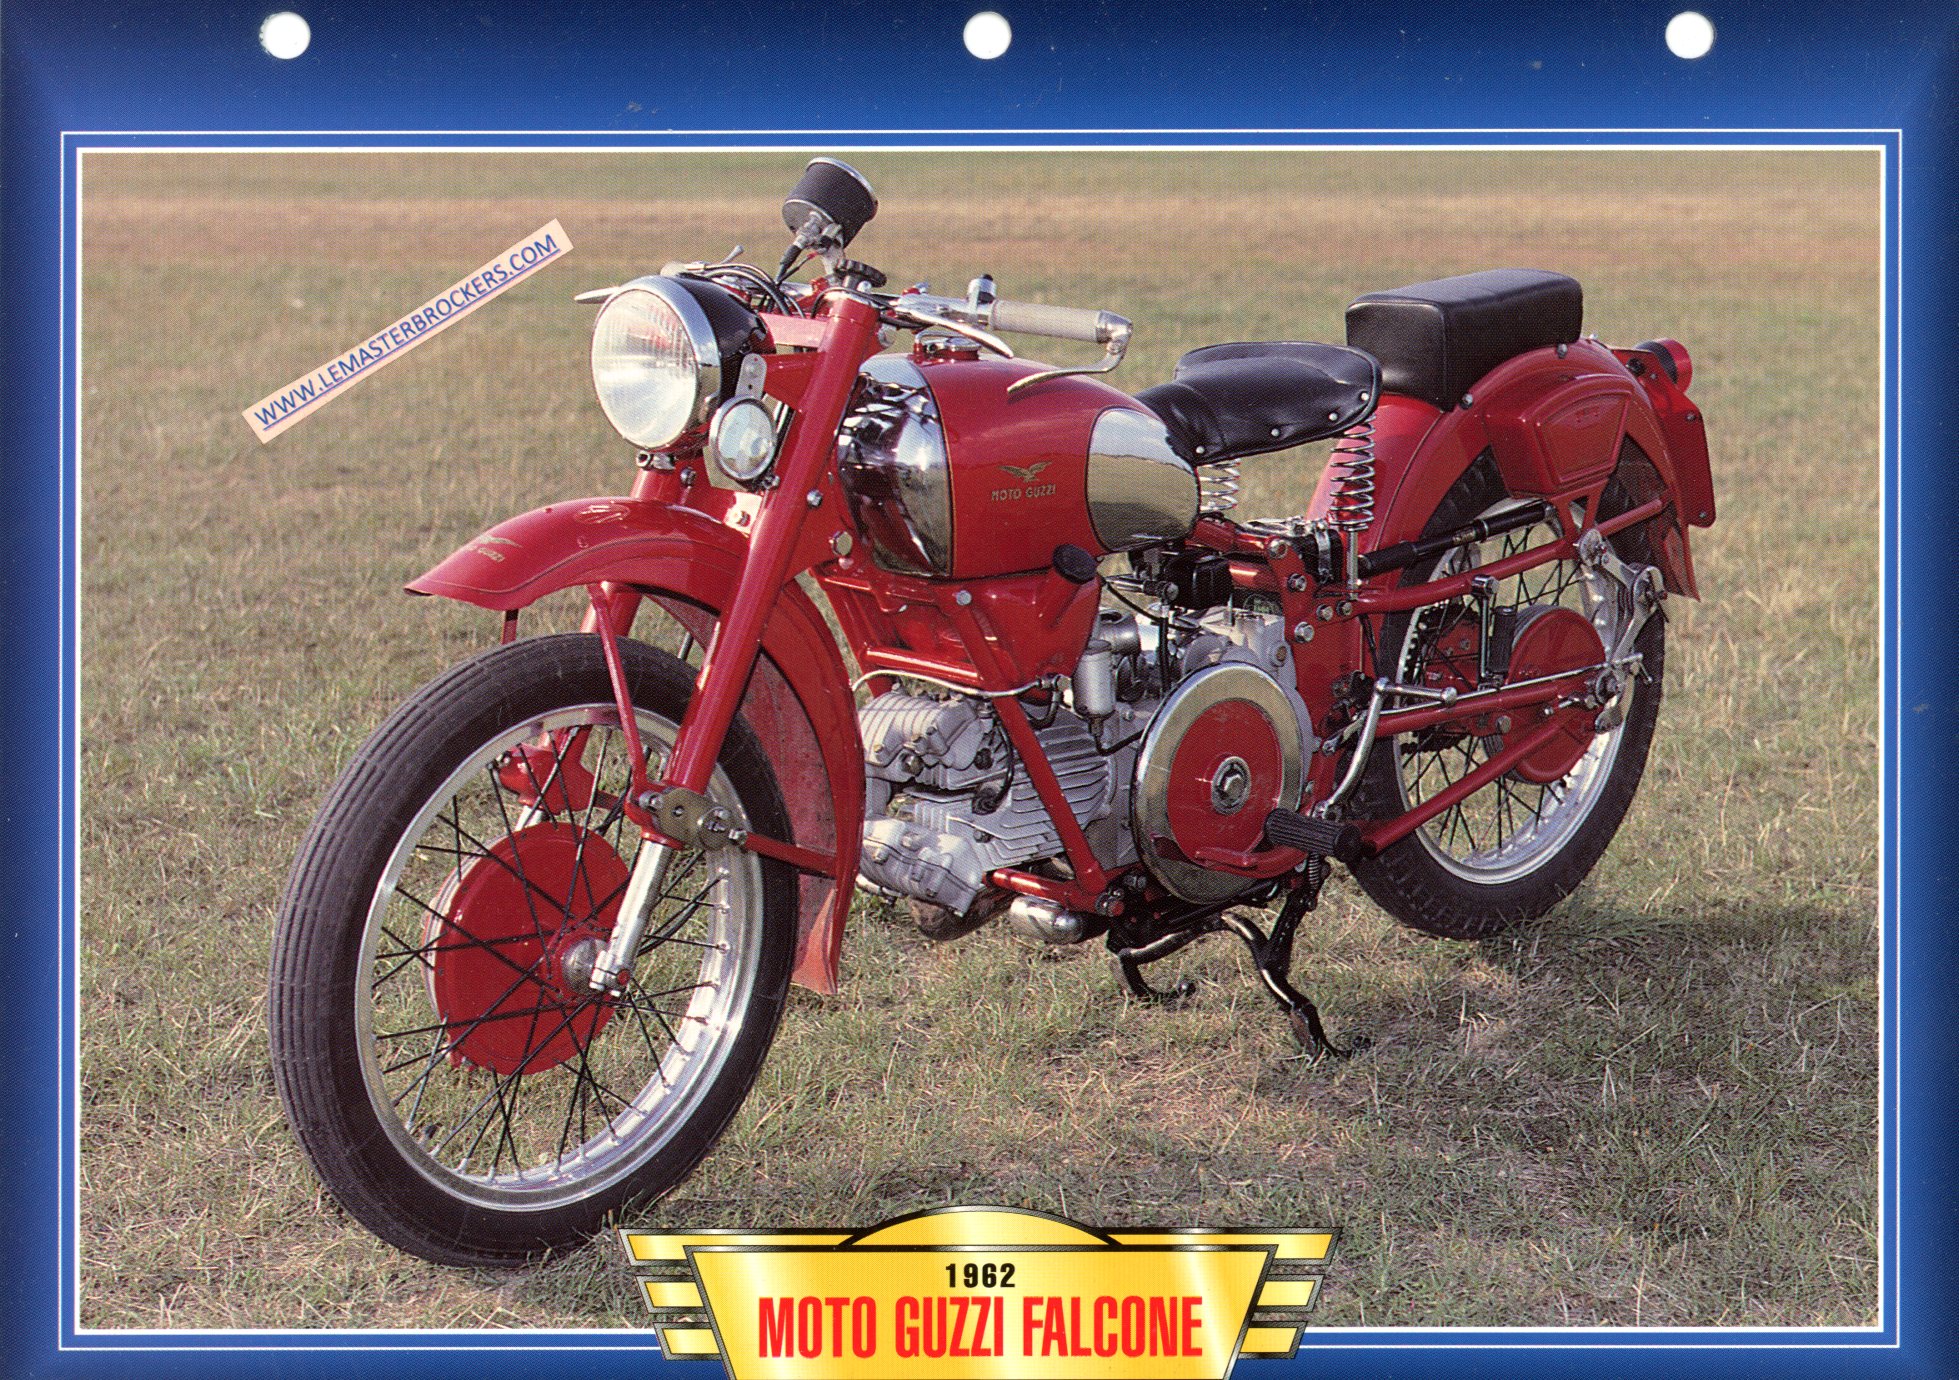 DOCUMENT MOTO GUZZI FALCONE 1962 - FICHE MOTO